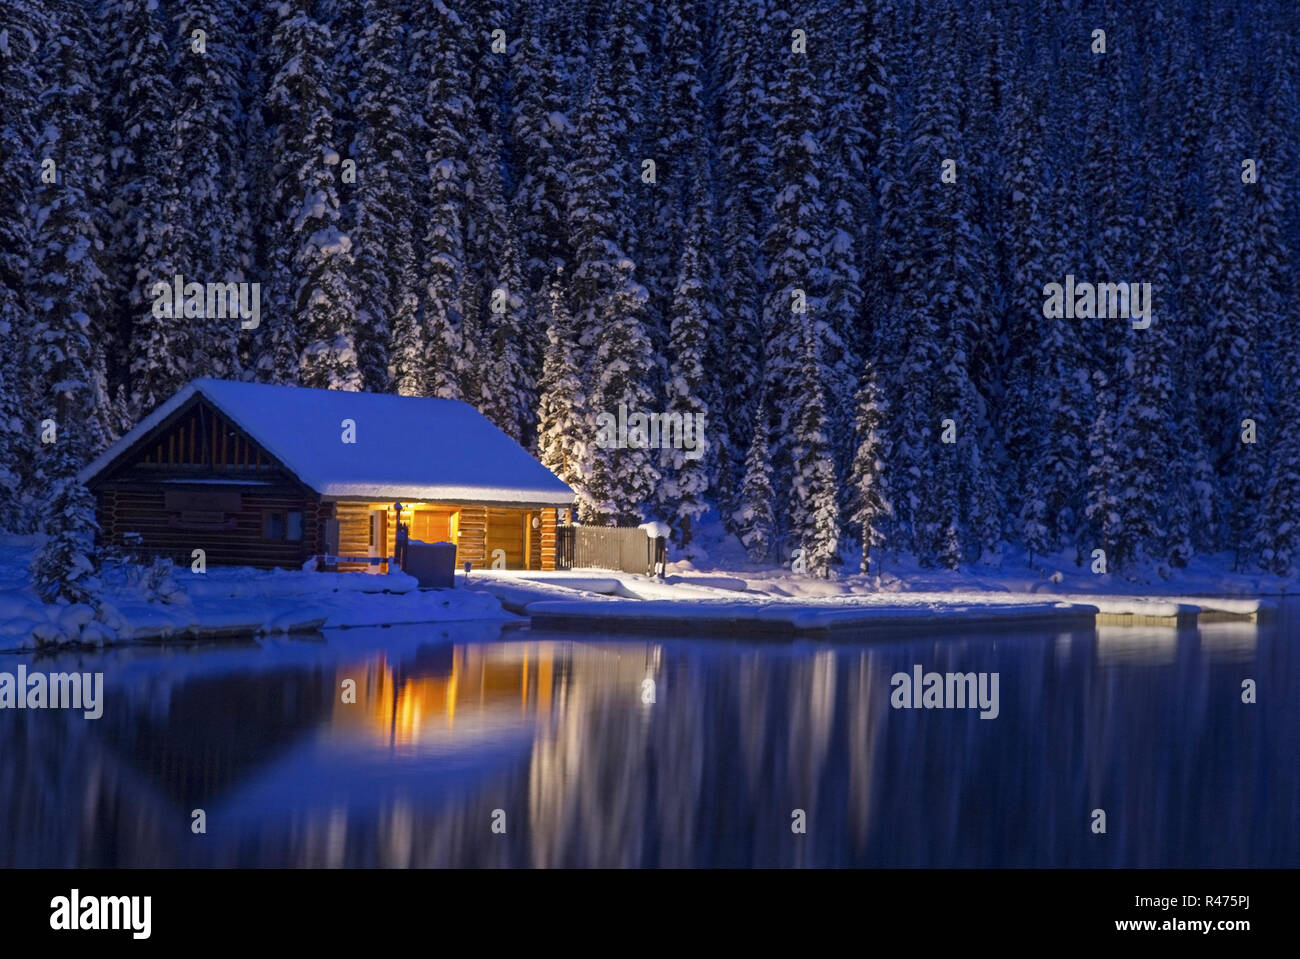 Détail de cabane en bois rustique. Paysage de forêt de neige réflexion de lumière nocturne. Calme Lake Louise eau Parc national Banff hiver Canada montagnes Rocheuses Banque D'Images